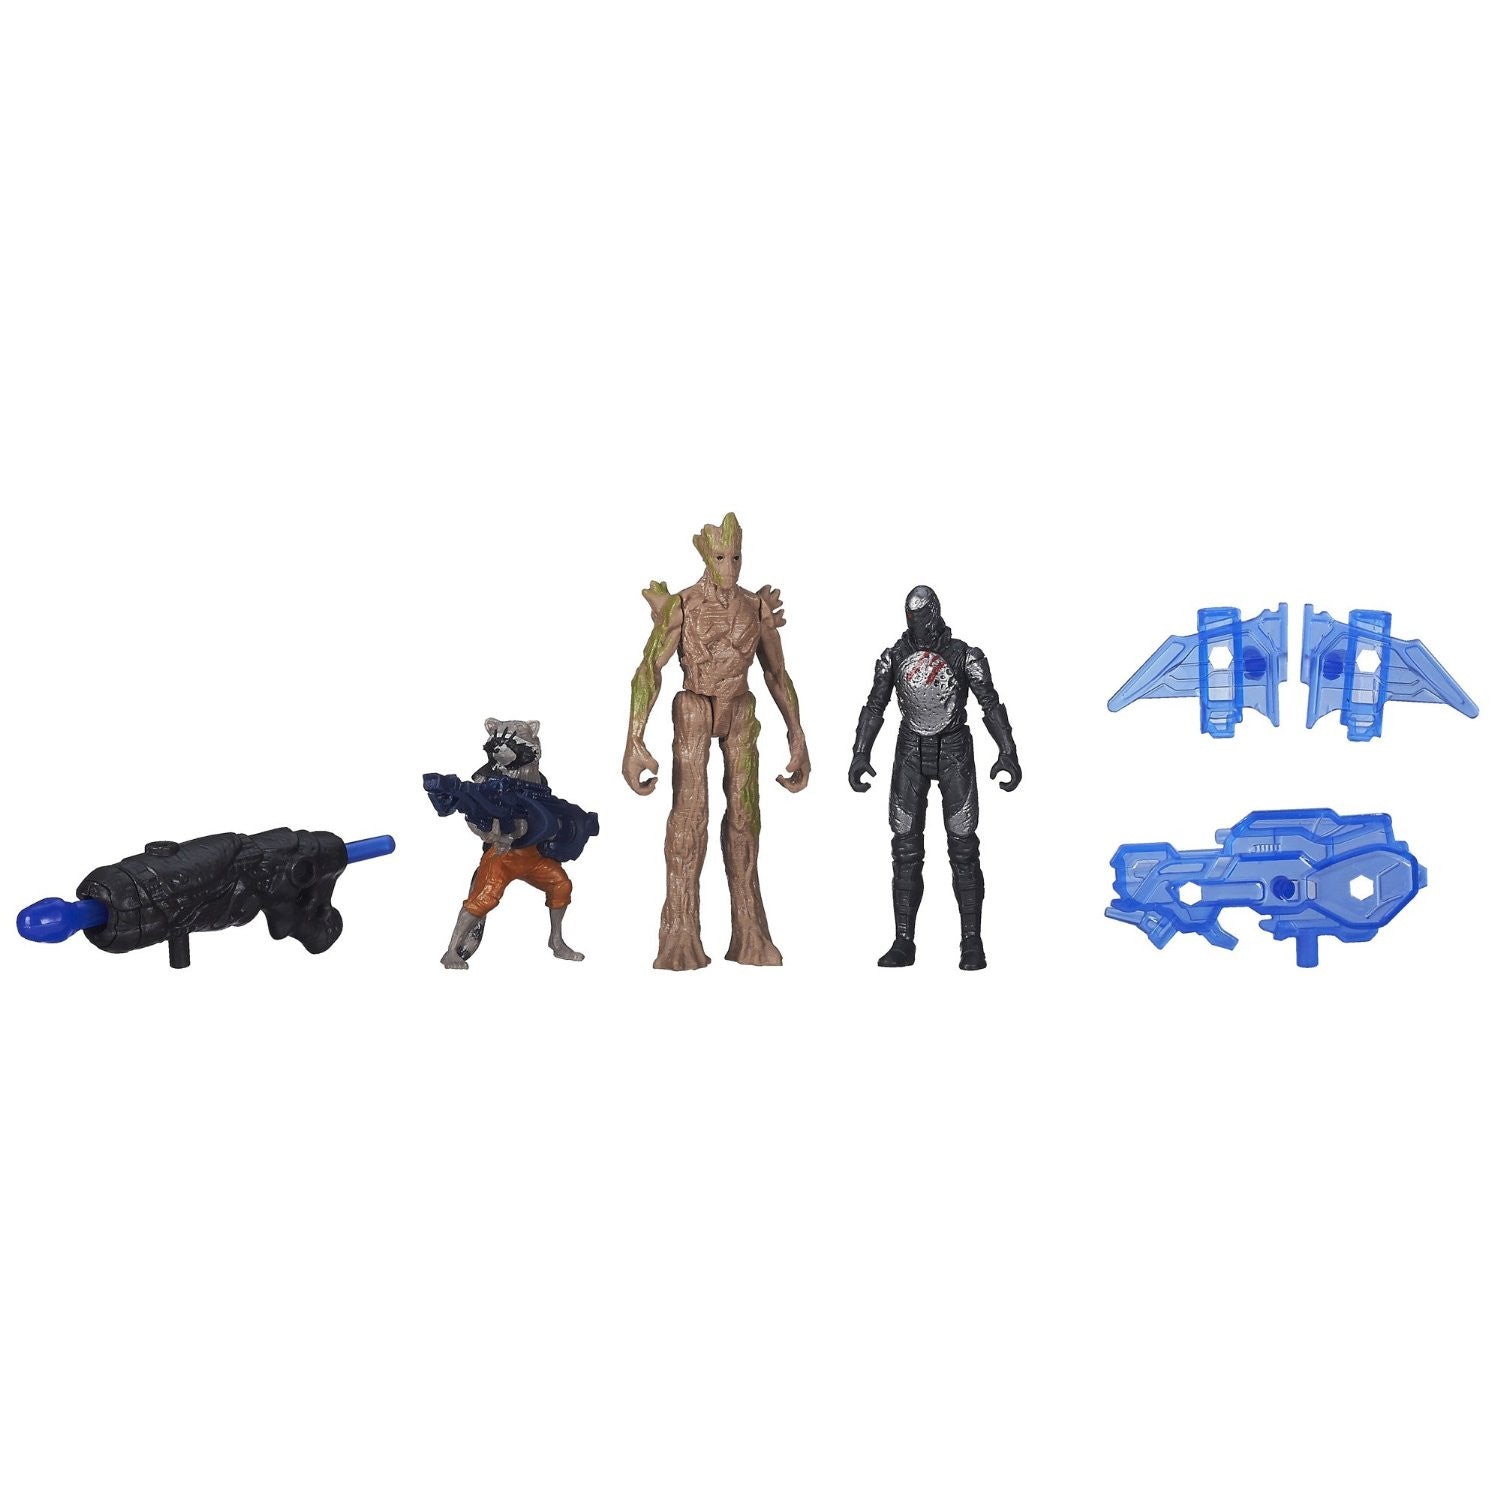 Marvel Guardians of The Galaxy Groot, Rocket Raccoon and Sakaaran Trooper Figure Pack